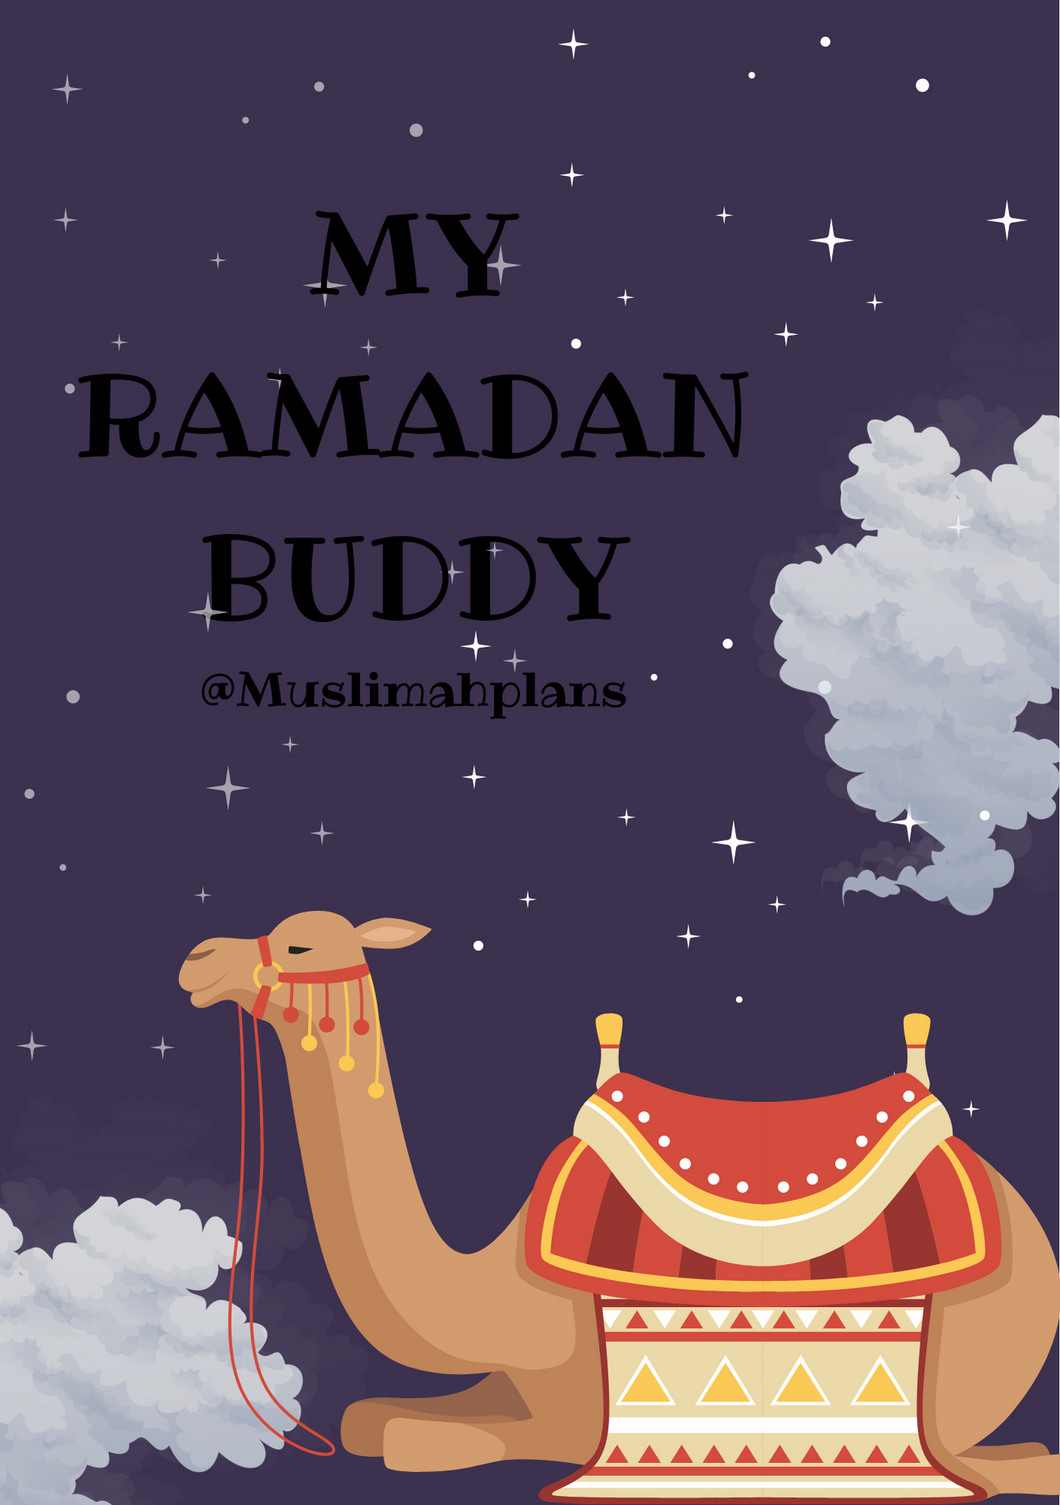 My Ramadan Buddy